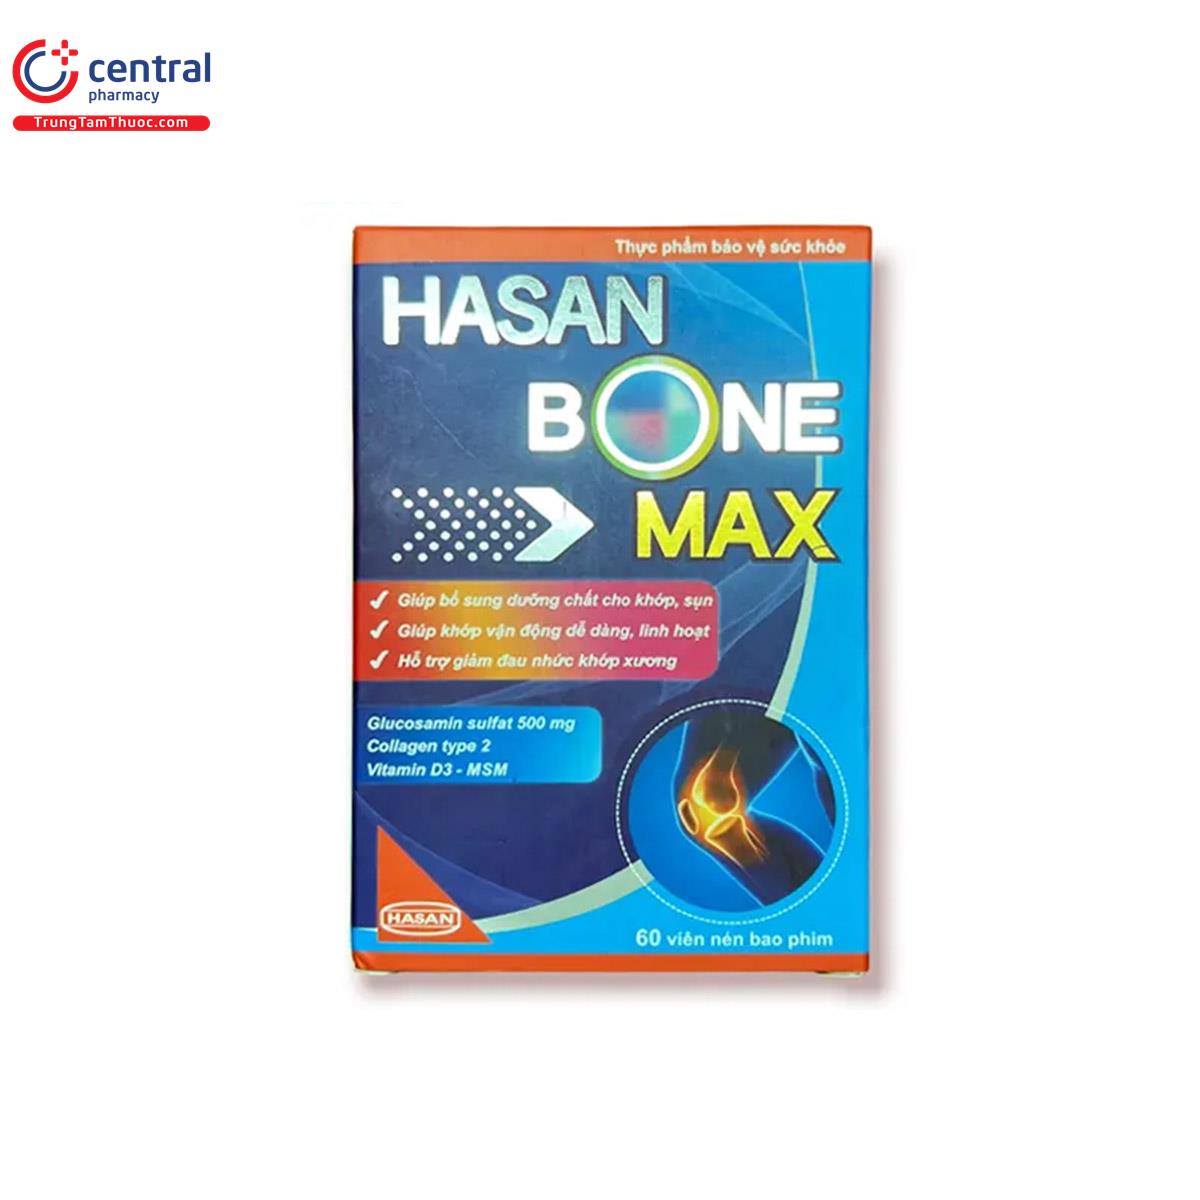 hasan bone max 1 L4876